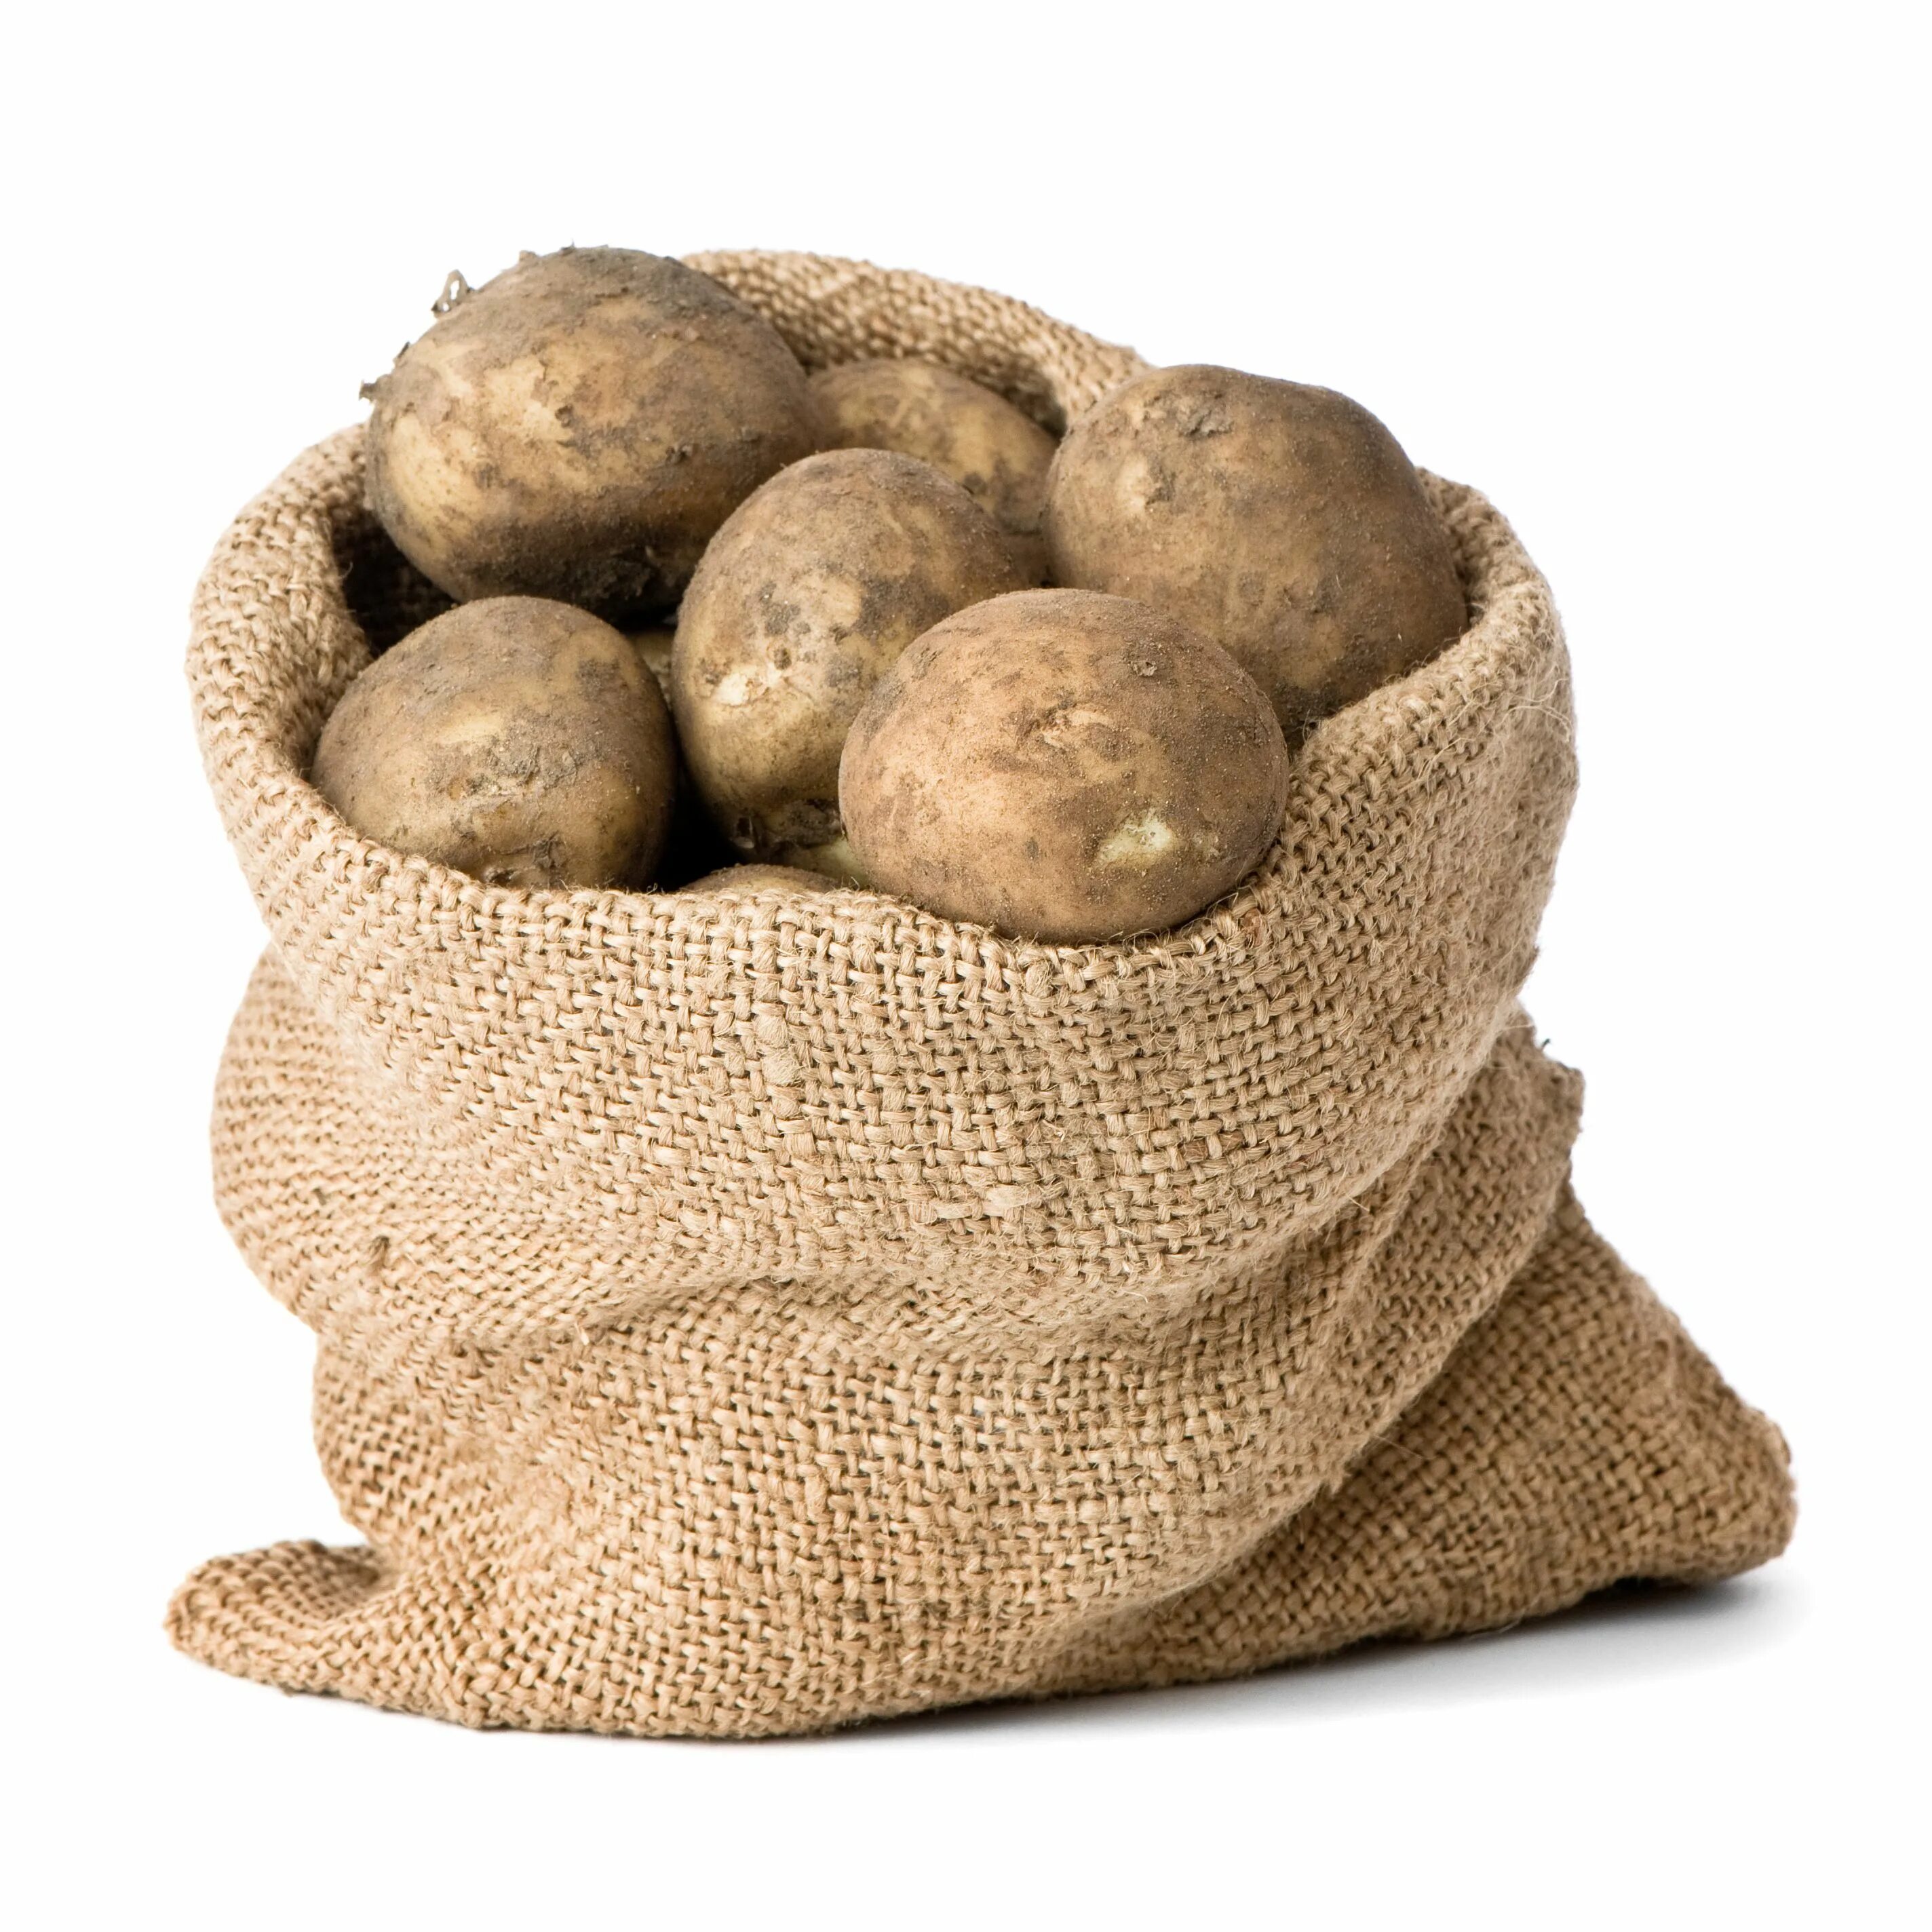 Сколько картофеля в 1 мешке